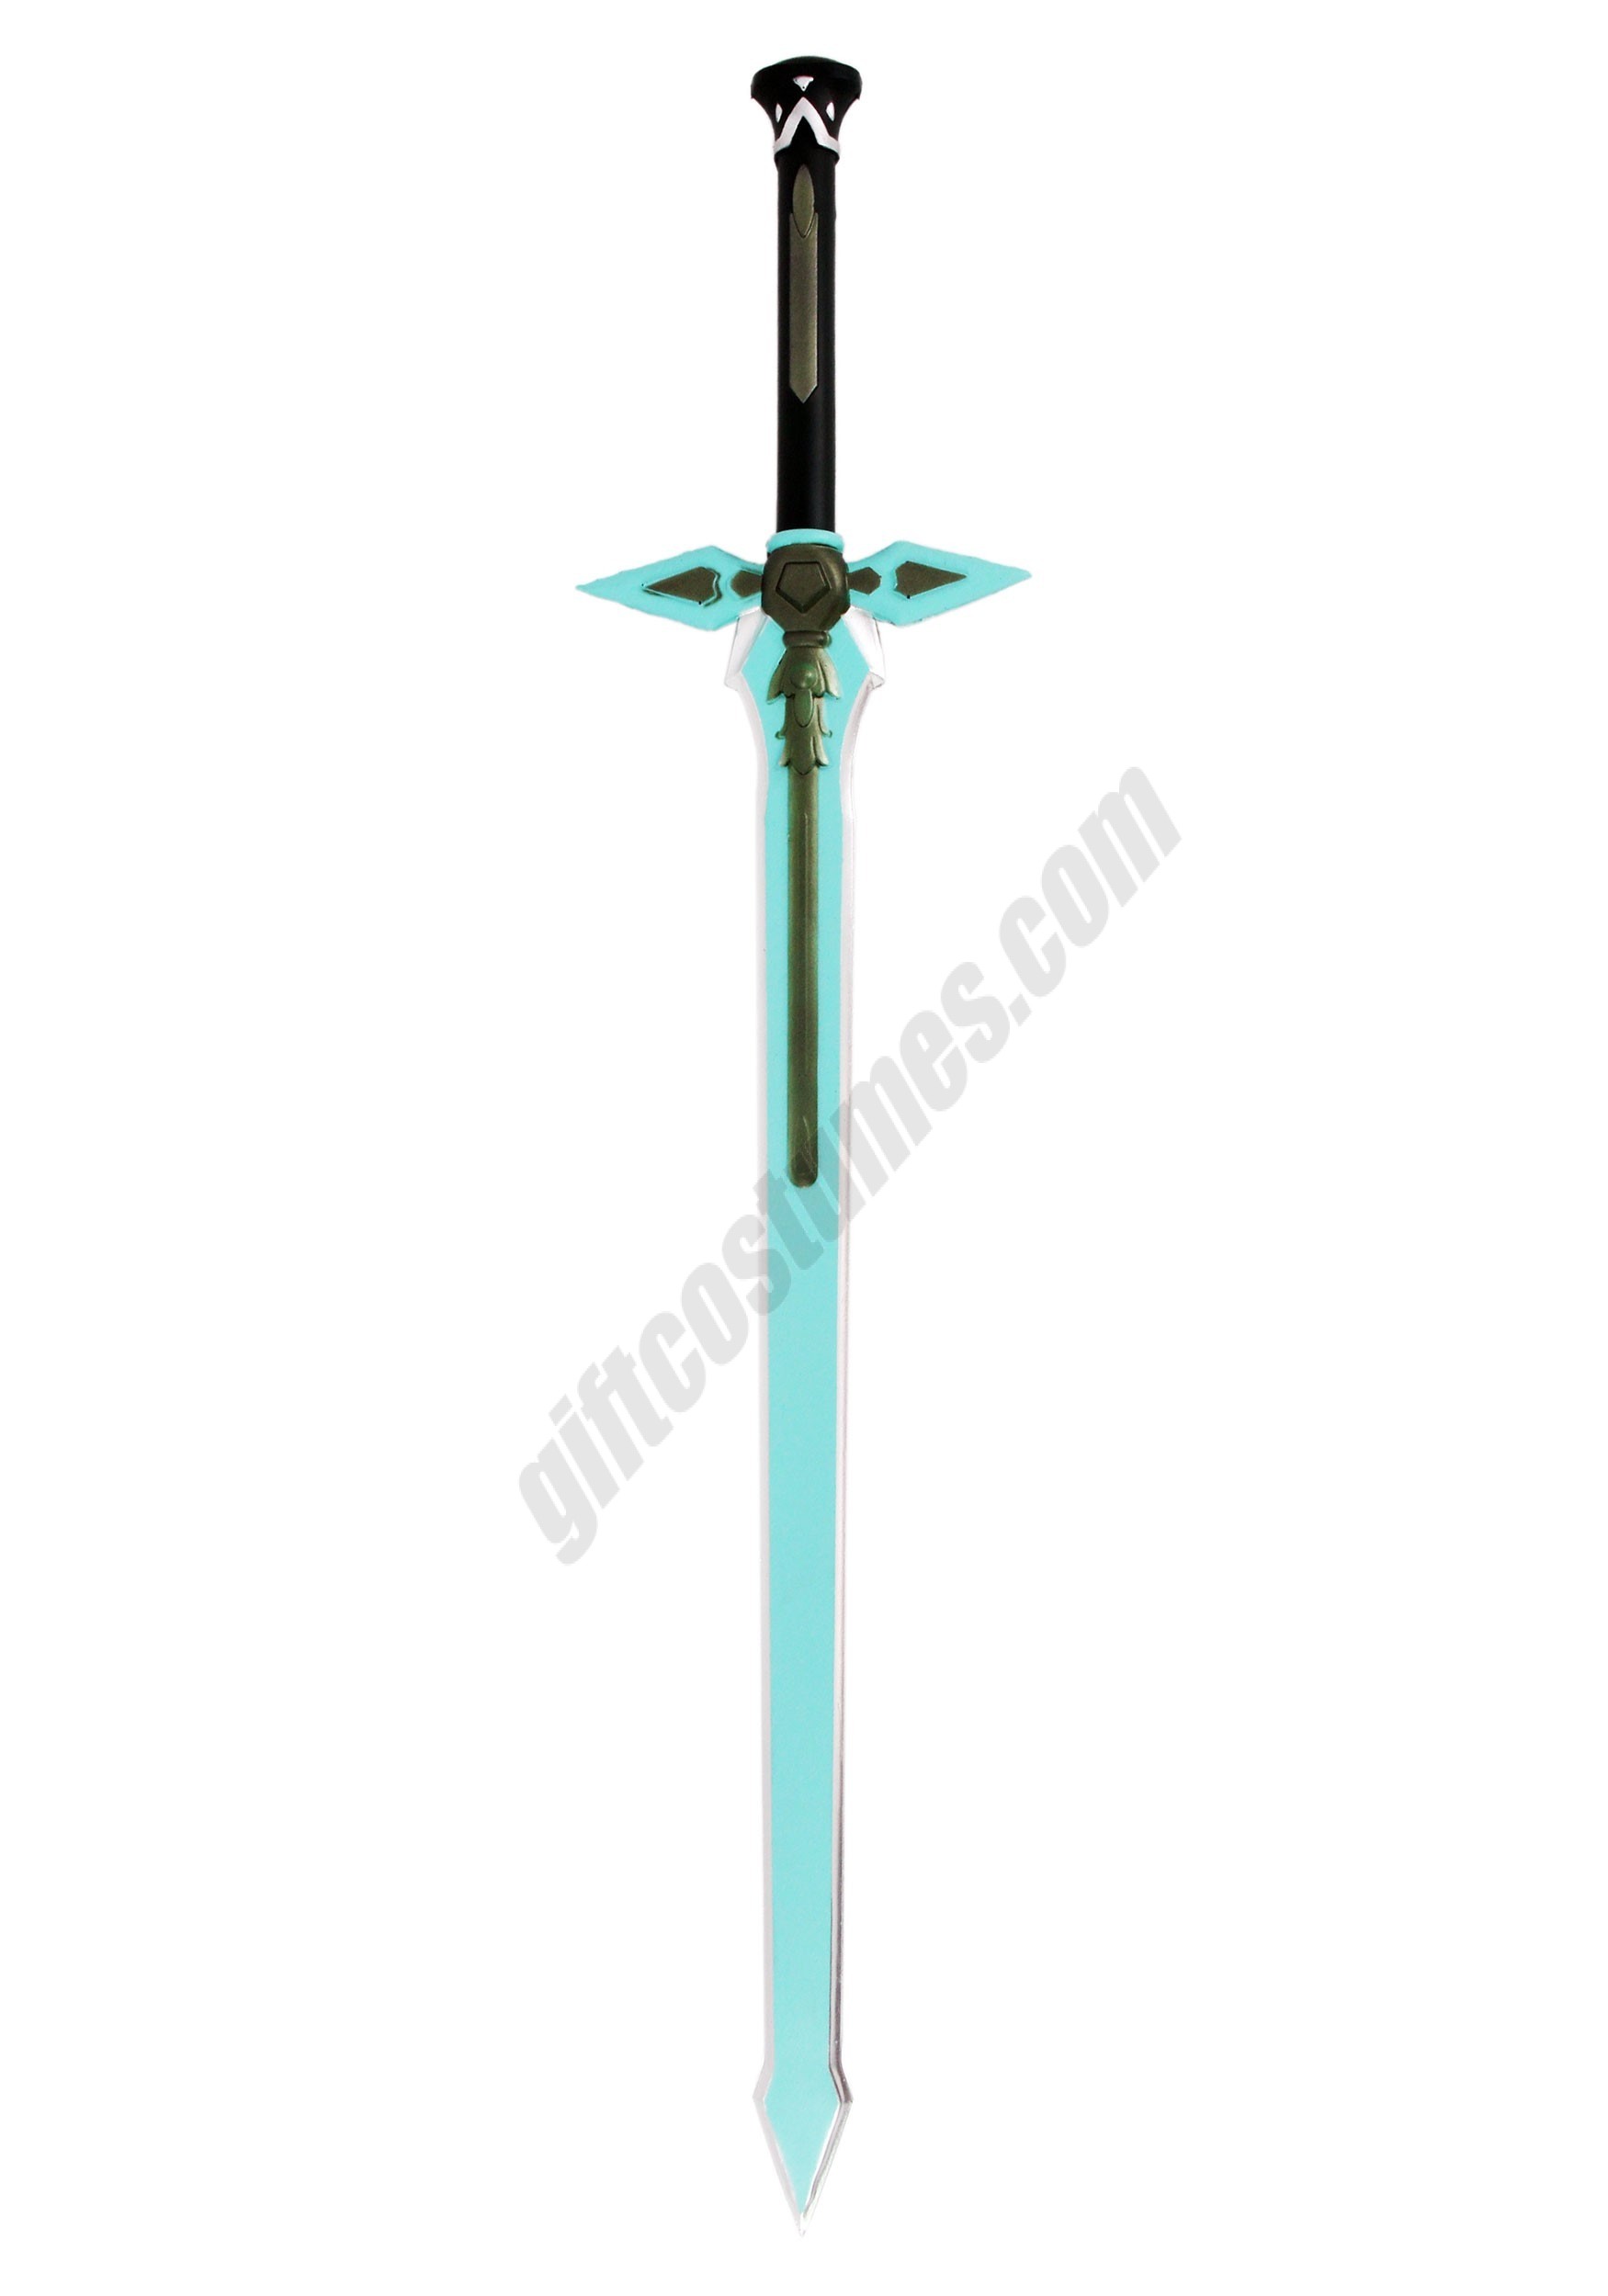 Sword Art Online Kirito’s Dark Repulser Sword Promotions - Sword Art Online Kirito’s Dark Repulser Sword Promotions